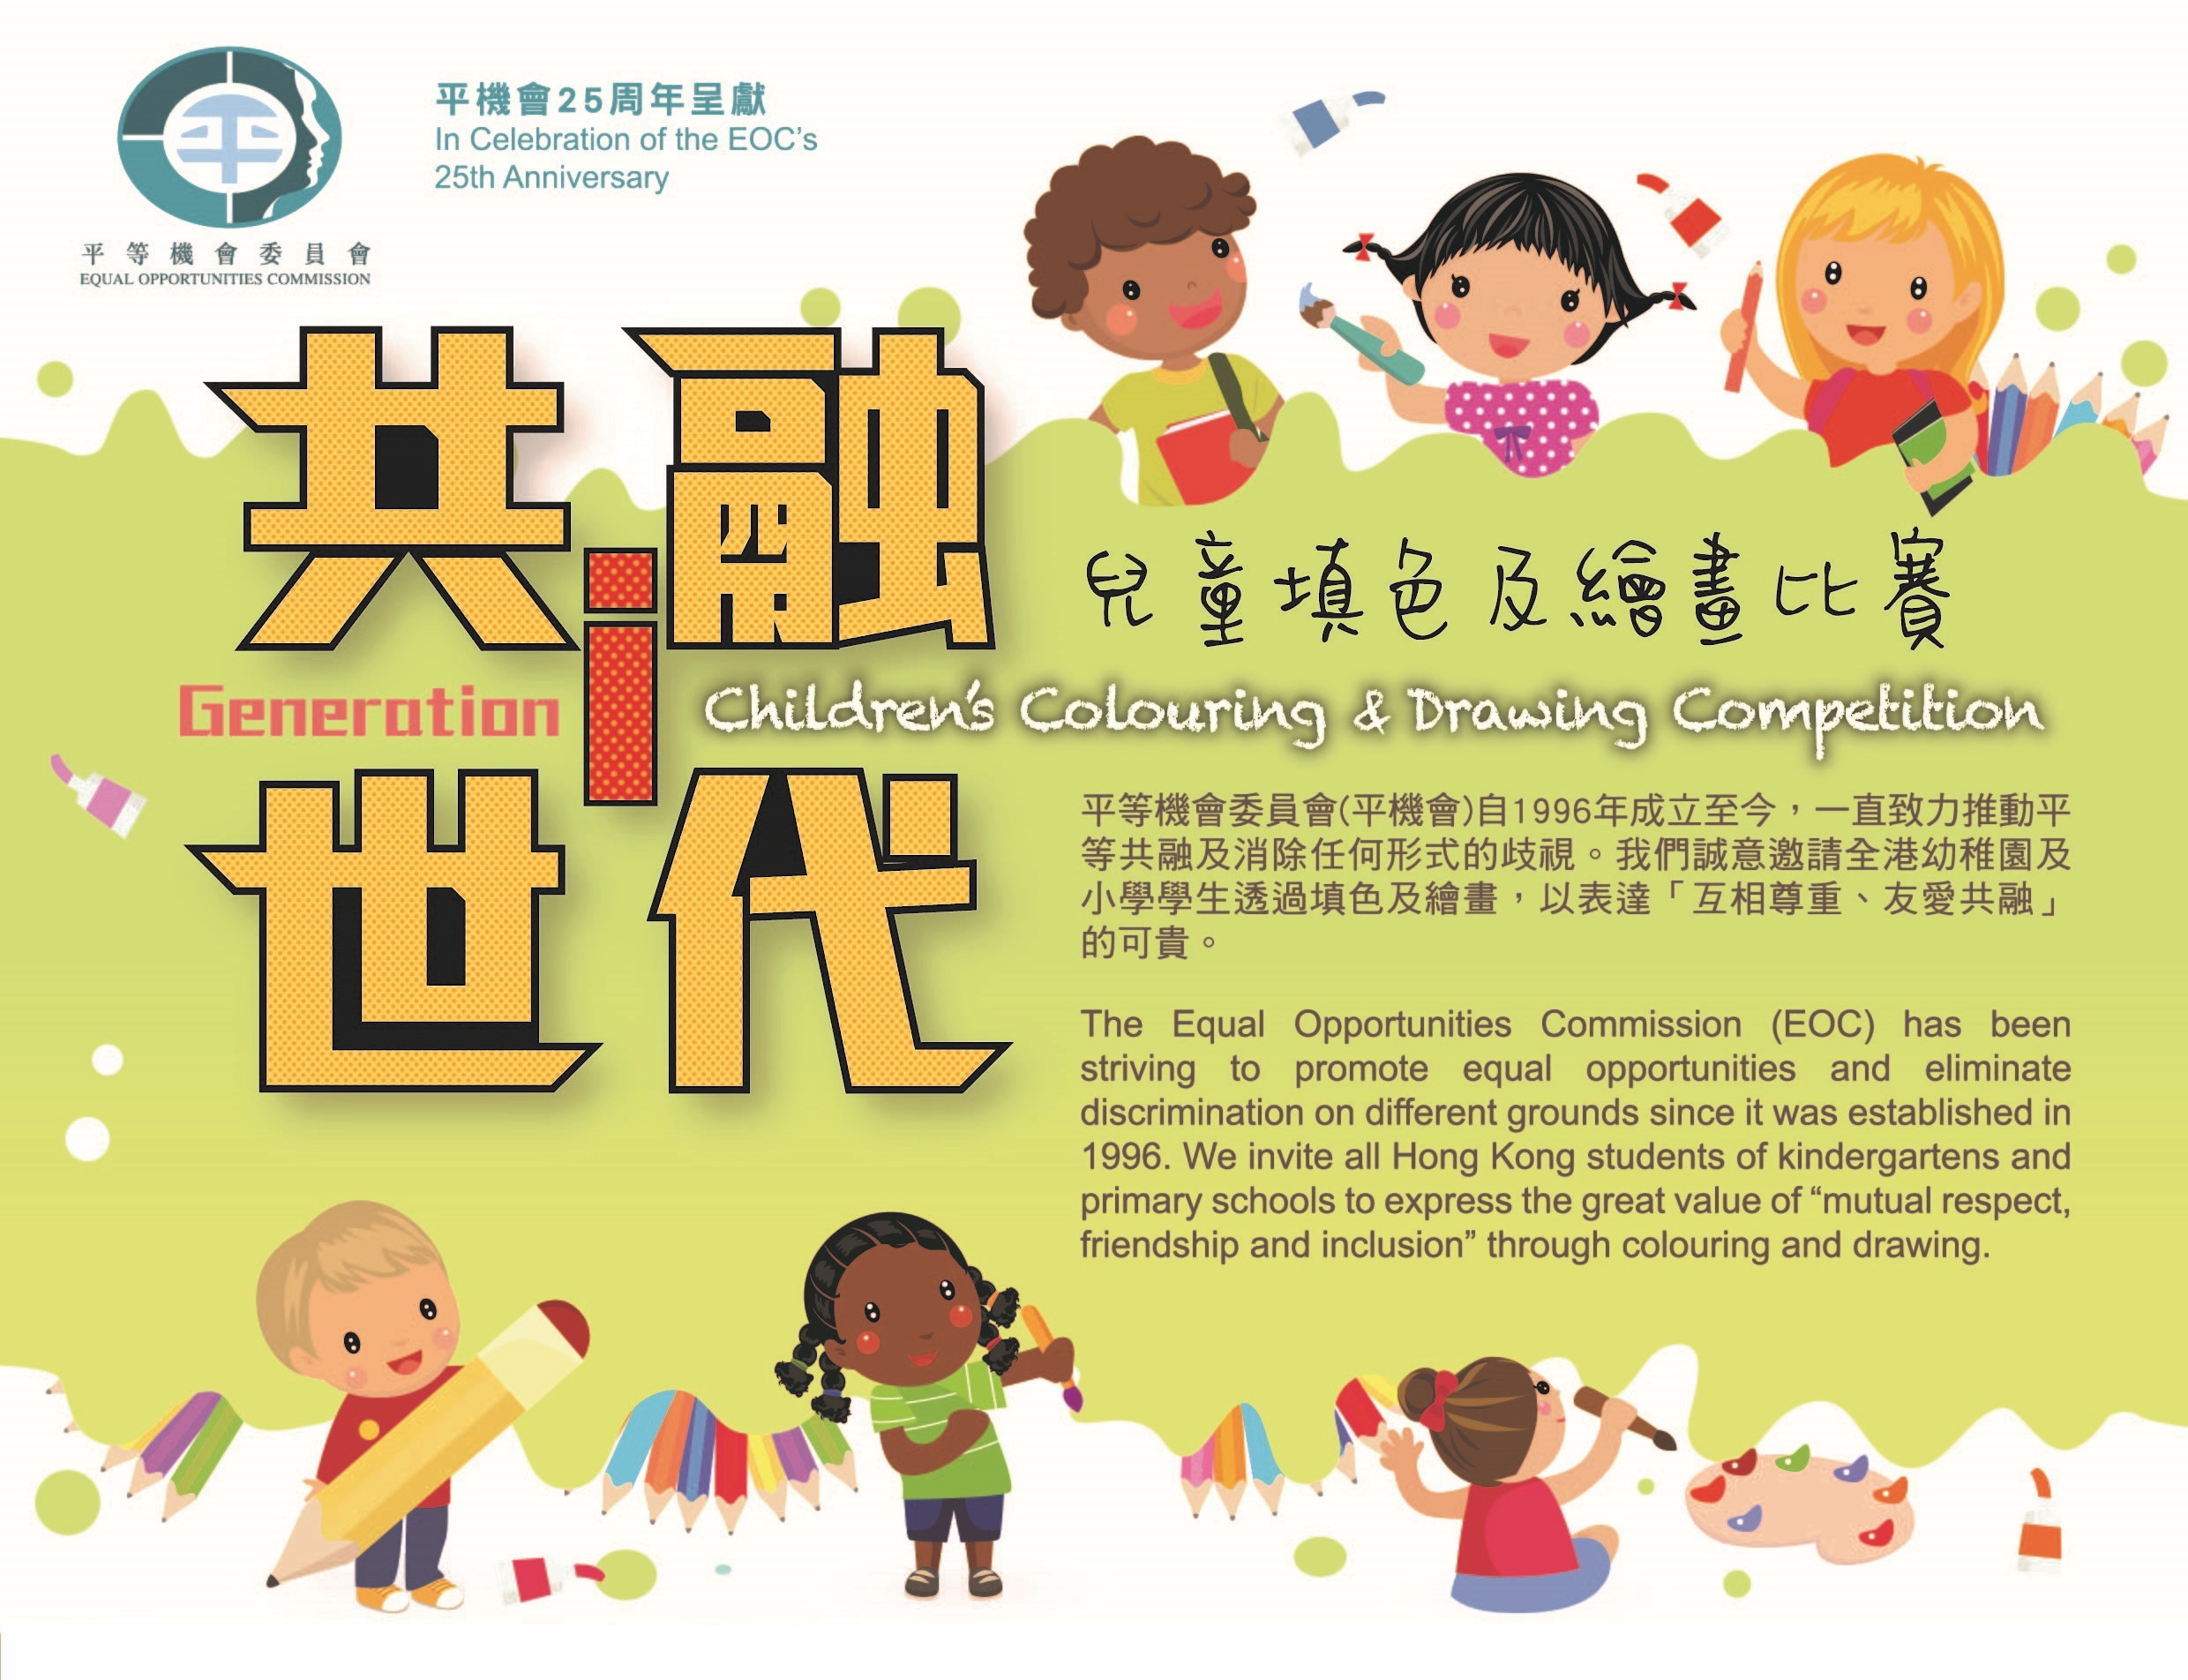 「共融i世代兒童填色及繪畫比賽」是為慶祝平機會25年周年首個推出的誌慶活動。比賽現已接受報名，截止日期為2020年8月31日。